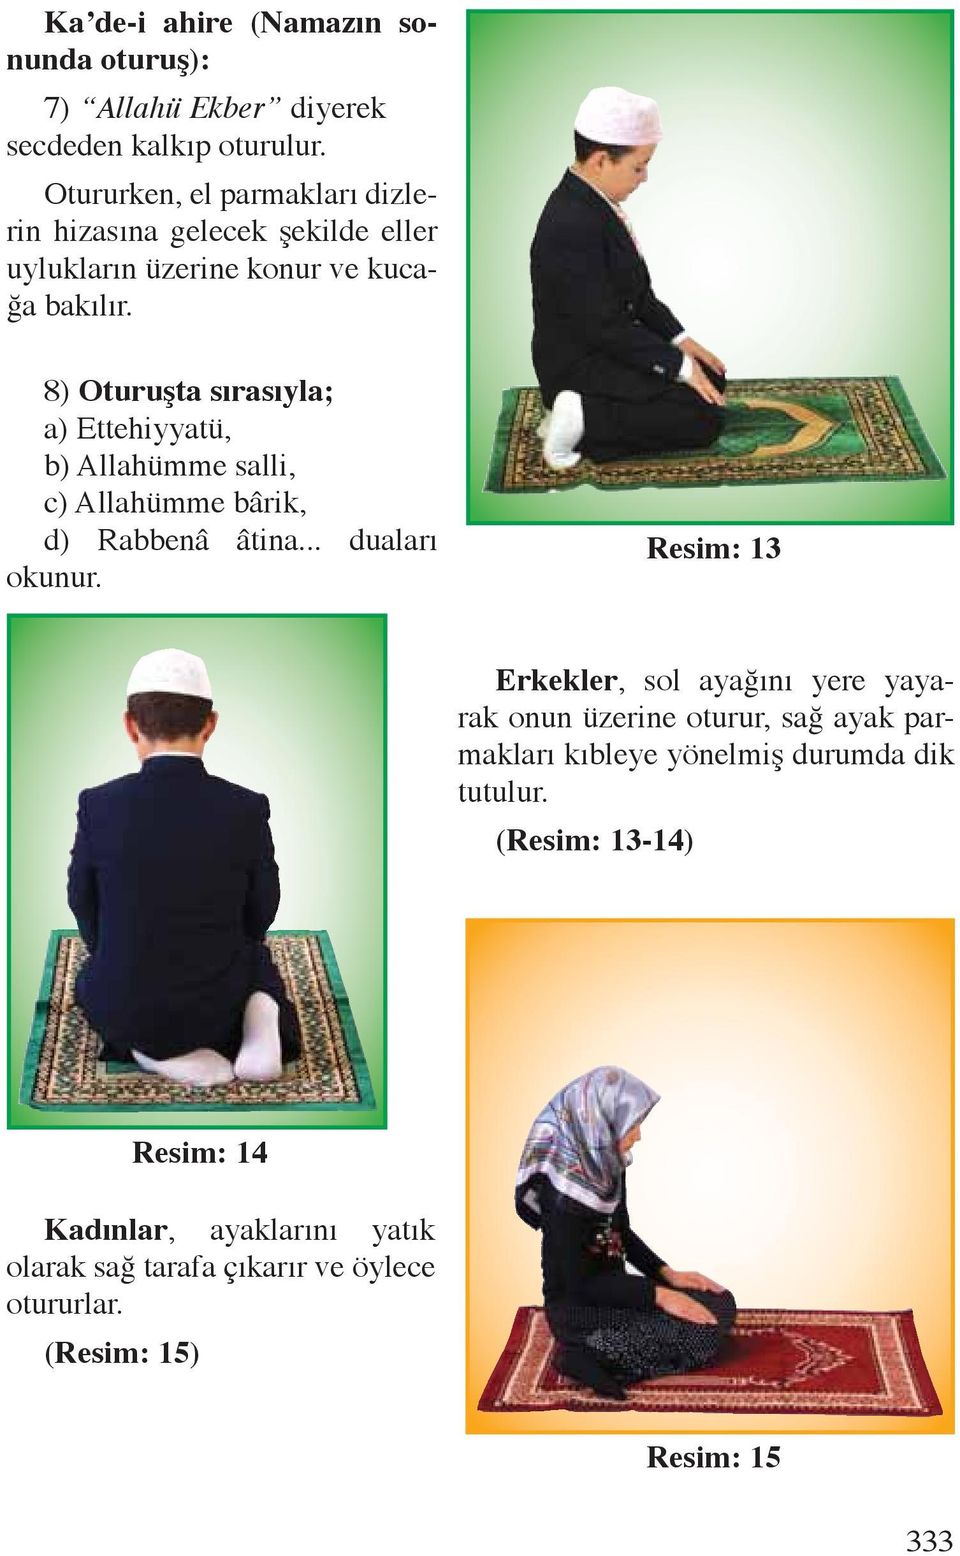 8) Oturuşta sırasıyla; a) Ettehiyyatü, b) Allahümme salli, c) Allahümme bârik, d) Rabbenâ âtina... duaları okunur.